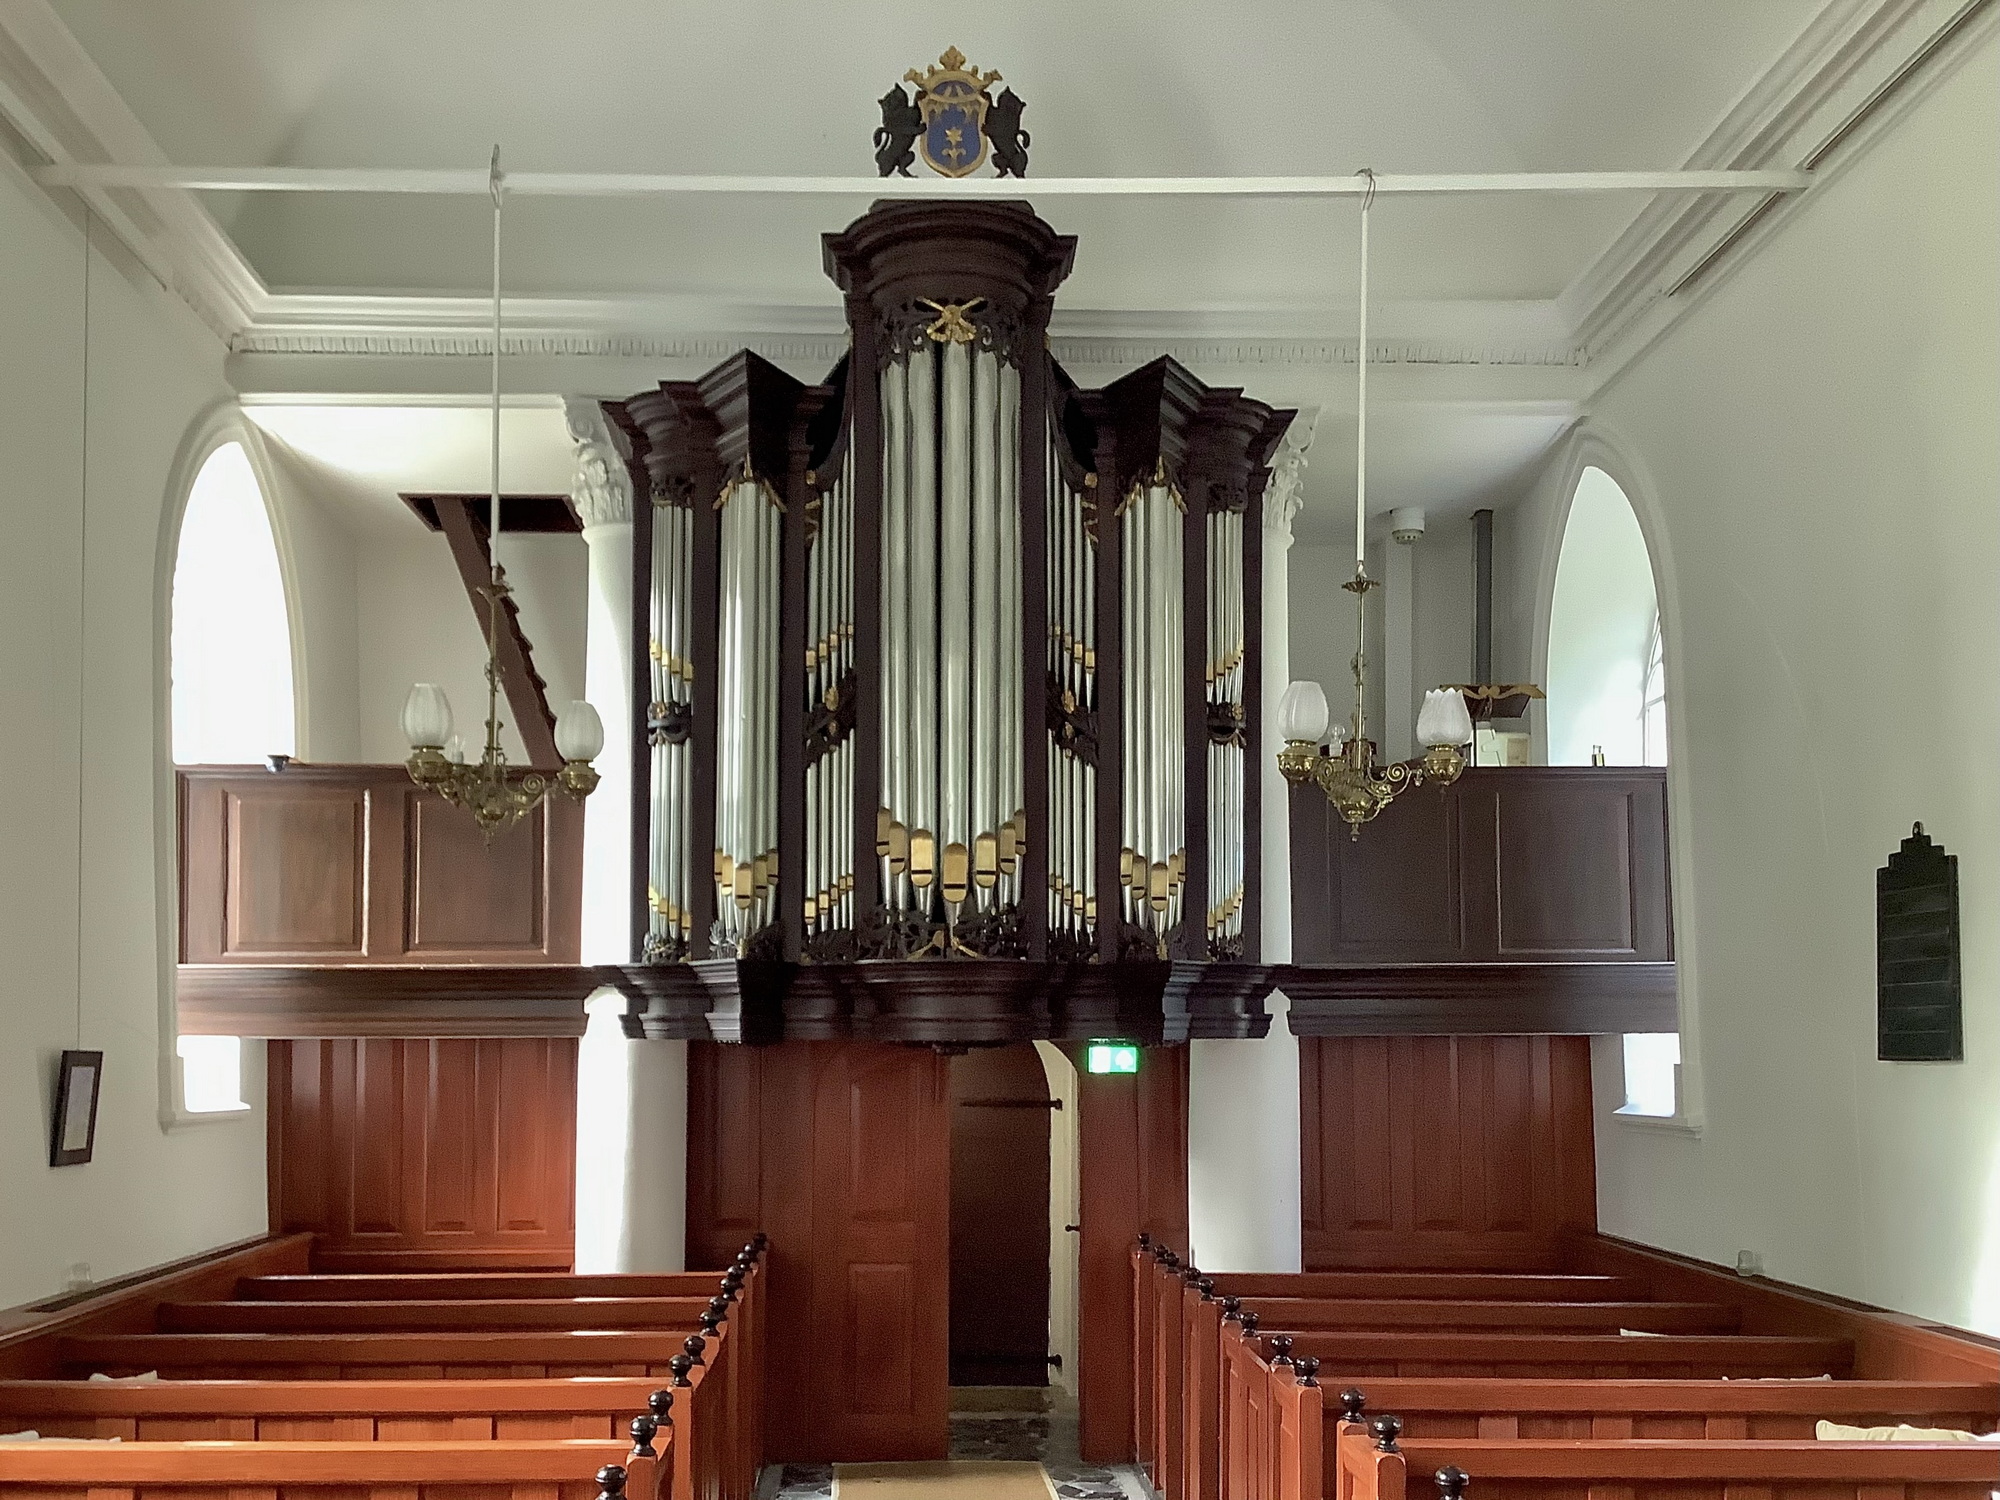 Het orgel van Petrus van Oeckelen uit 1849. Foto: ©Jur Kuipers.